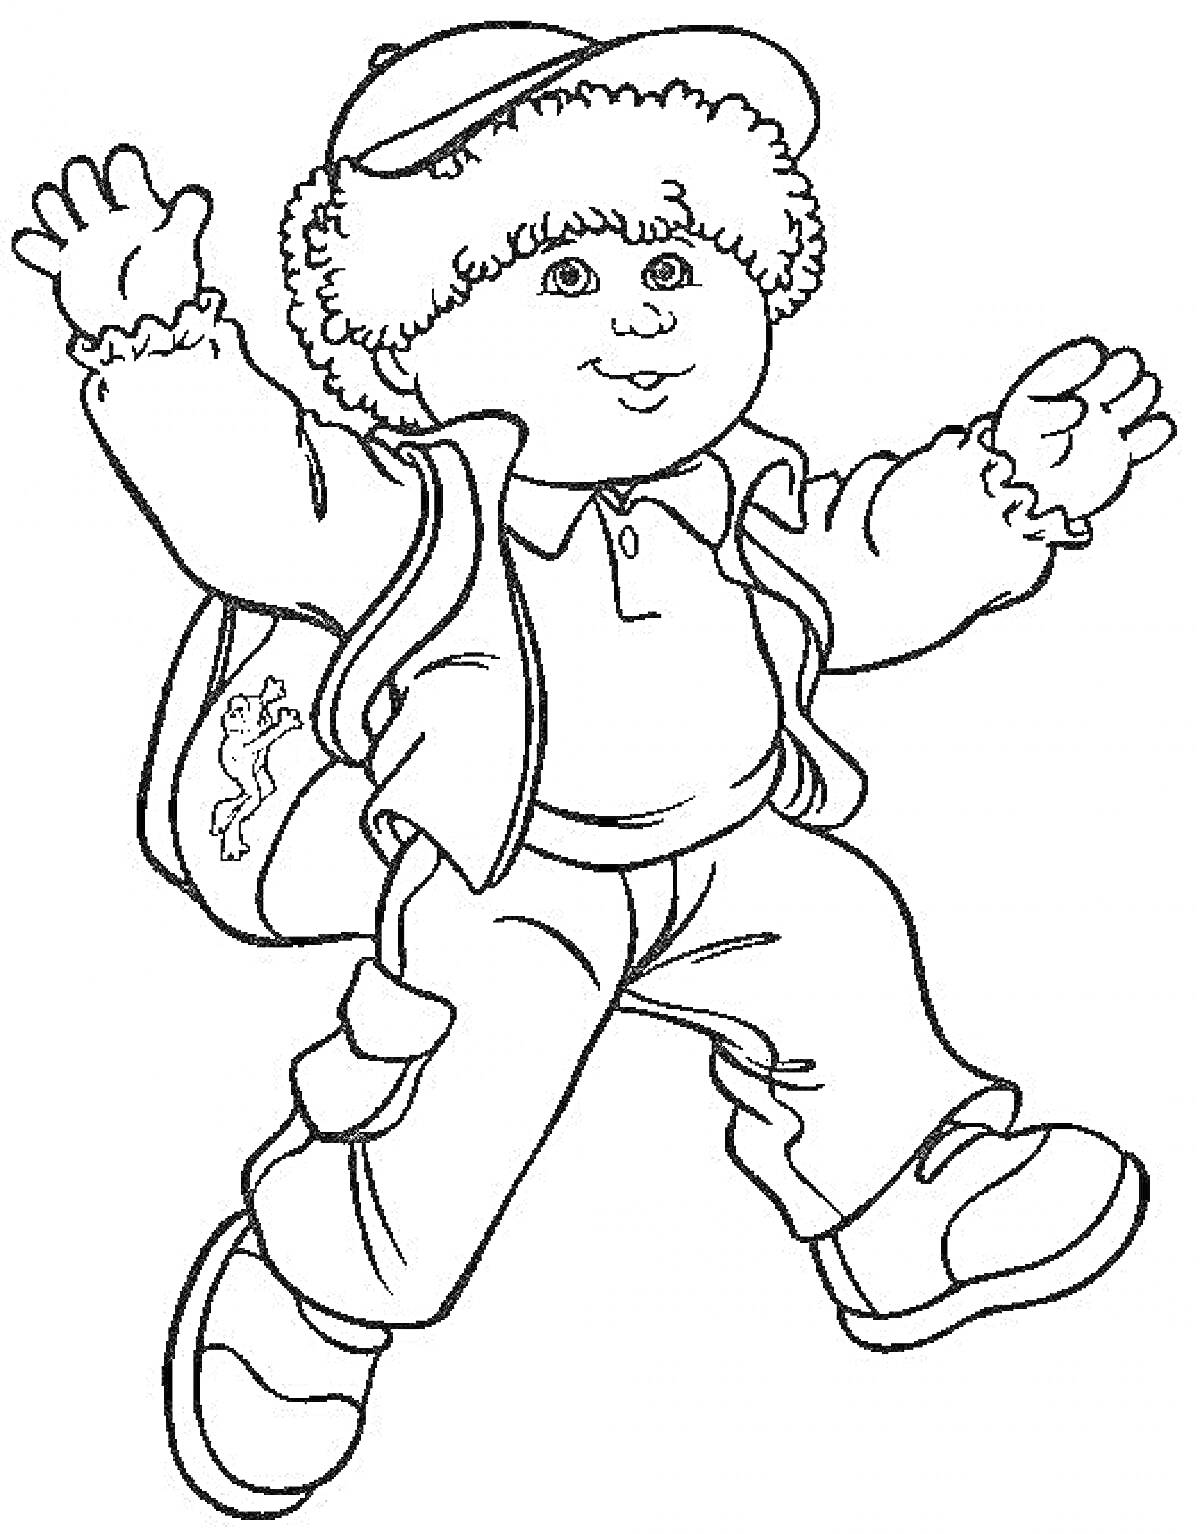 Раскраска Мальчик в зимней одежде с рюкзаком, в шапке и куртке, поднимающий руки вверх